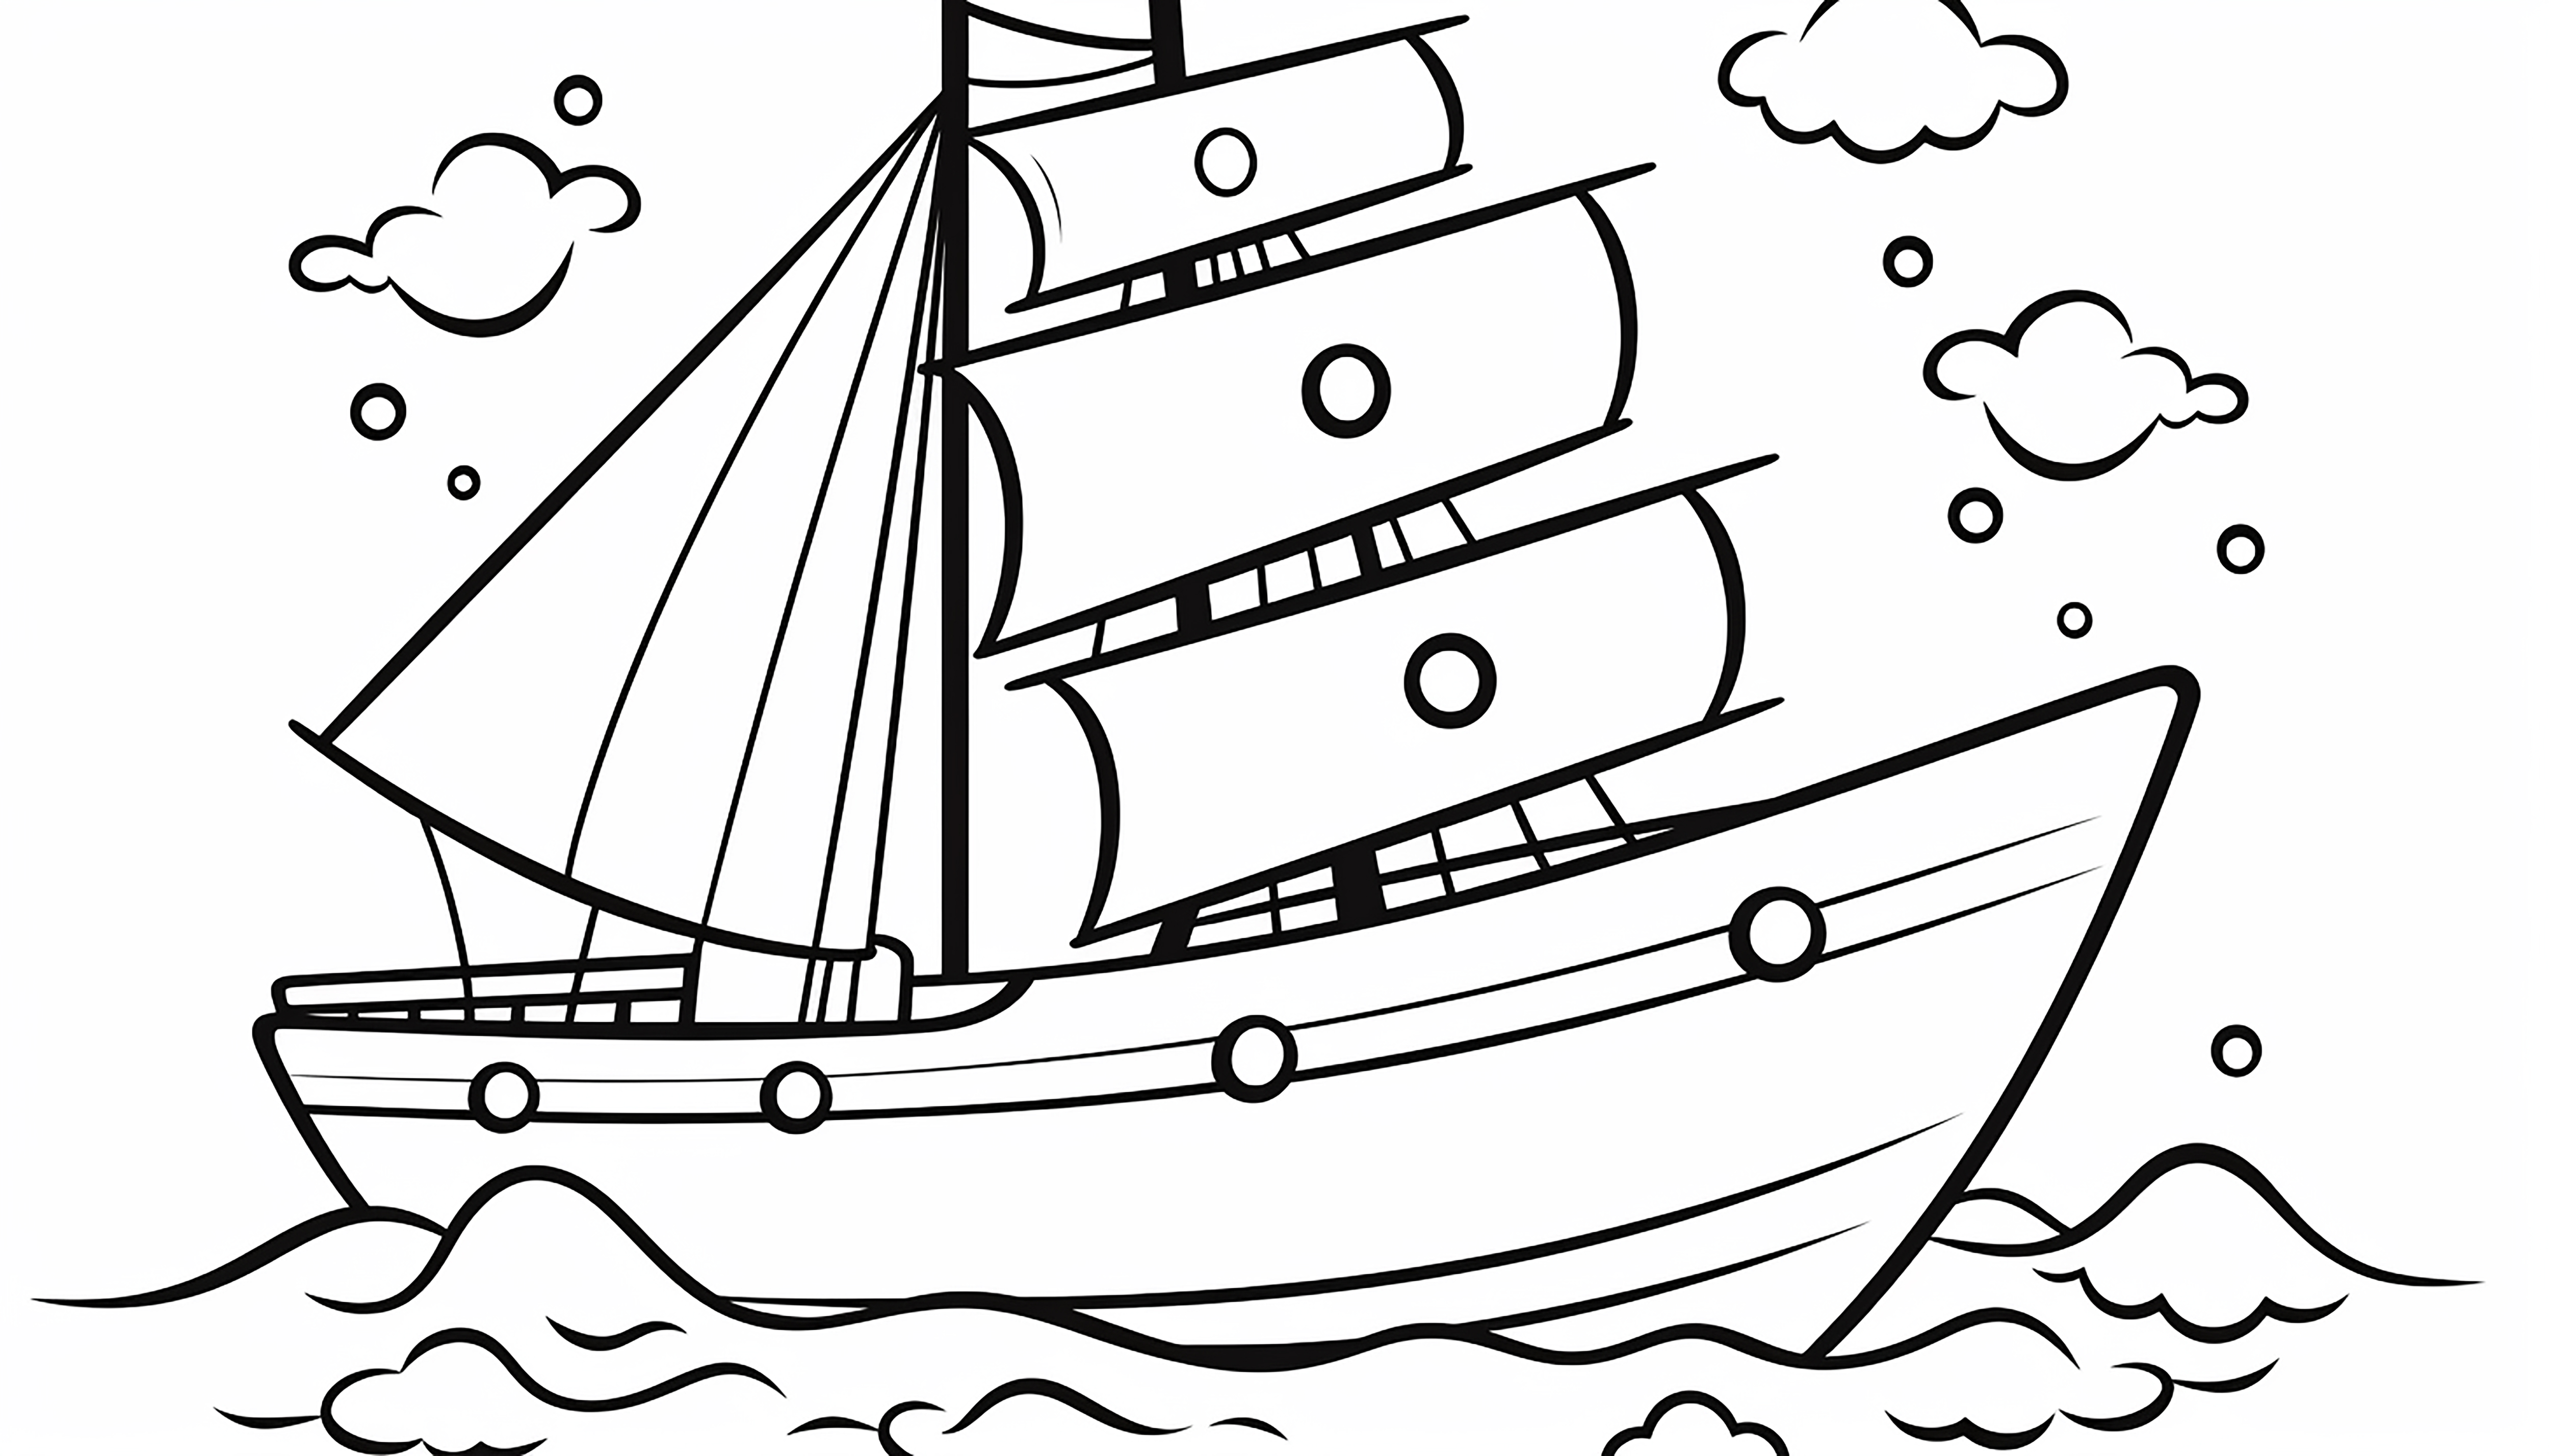 Раскраска маленький корабль в море «Паруса в мистическом свете» формата А4 в высоком качестве